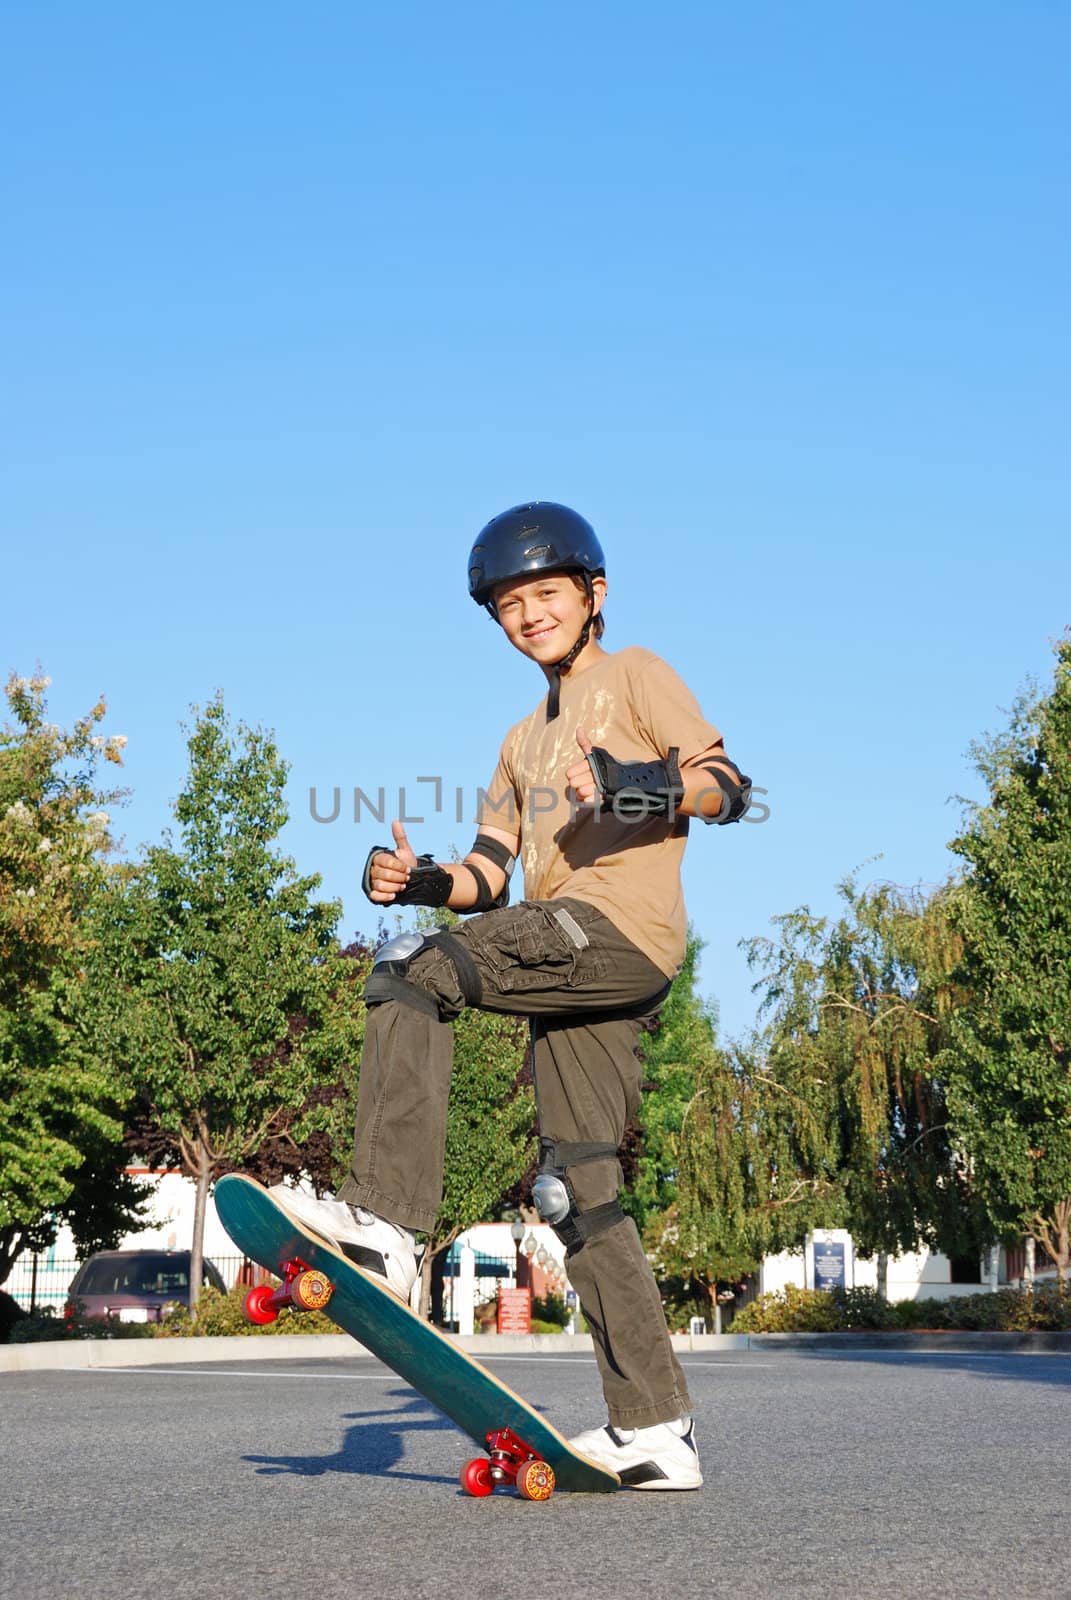 Skateboarding Fun by goldenangel